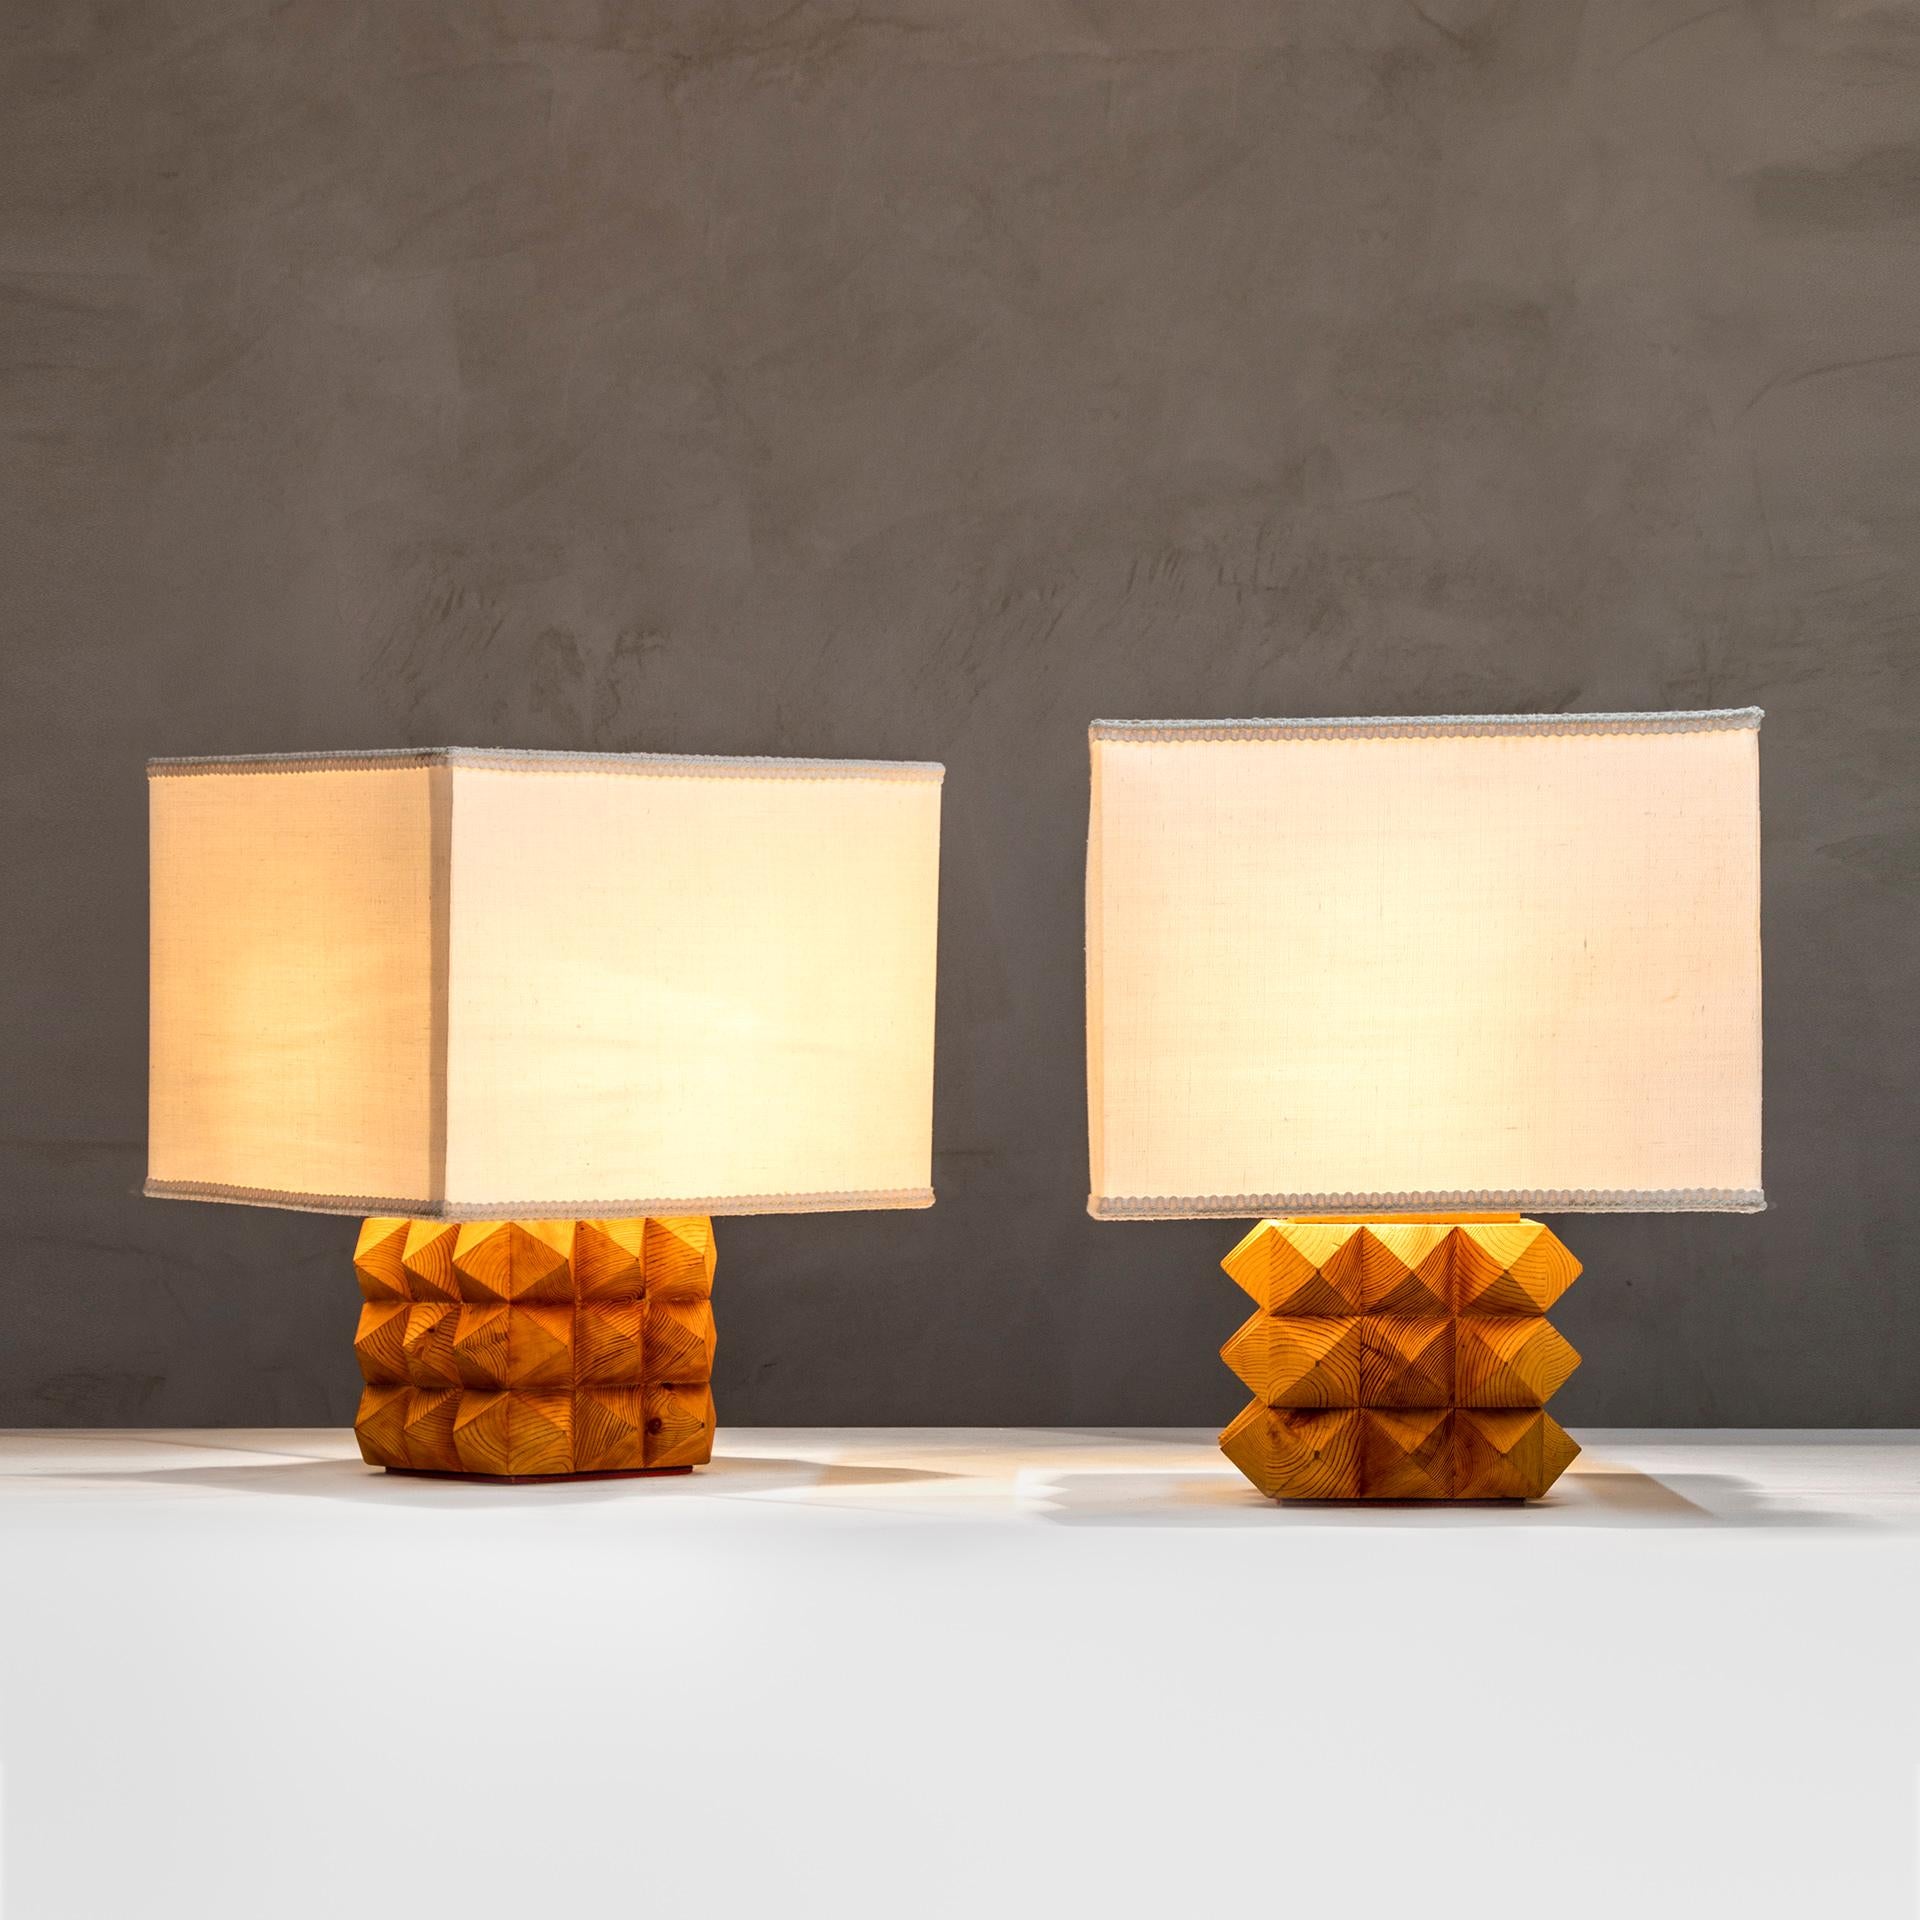 Paire de lampes de table par Mario Ceroli pour EAD (Edizioni Arte Design) conçues dans les années 80, avec base en bois et diffuseur en tissu. Le modèle est appelé 